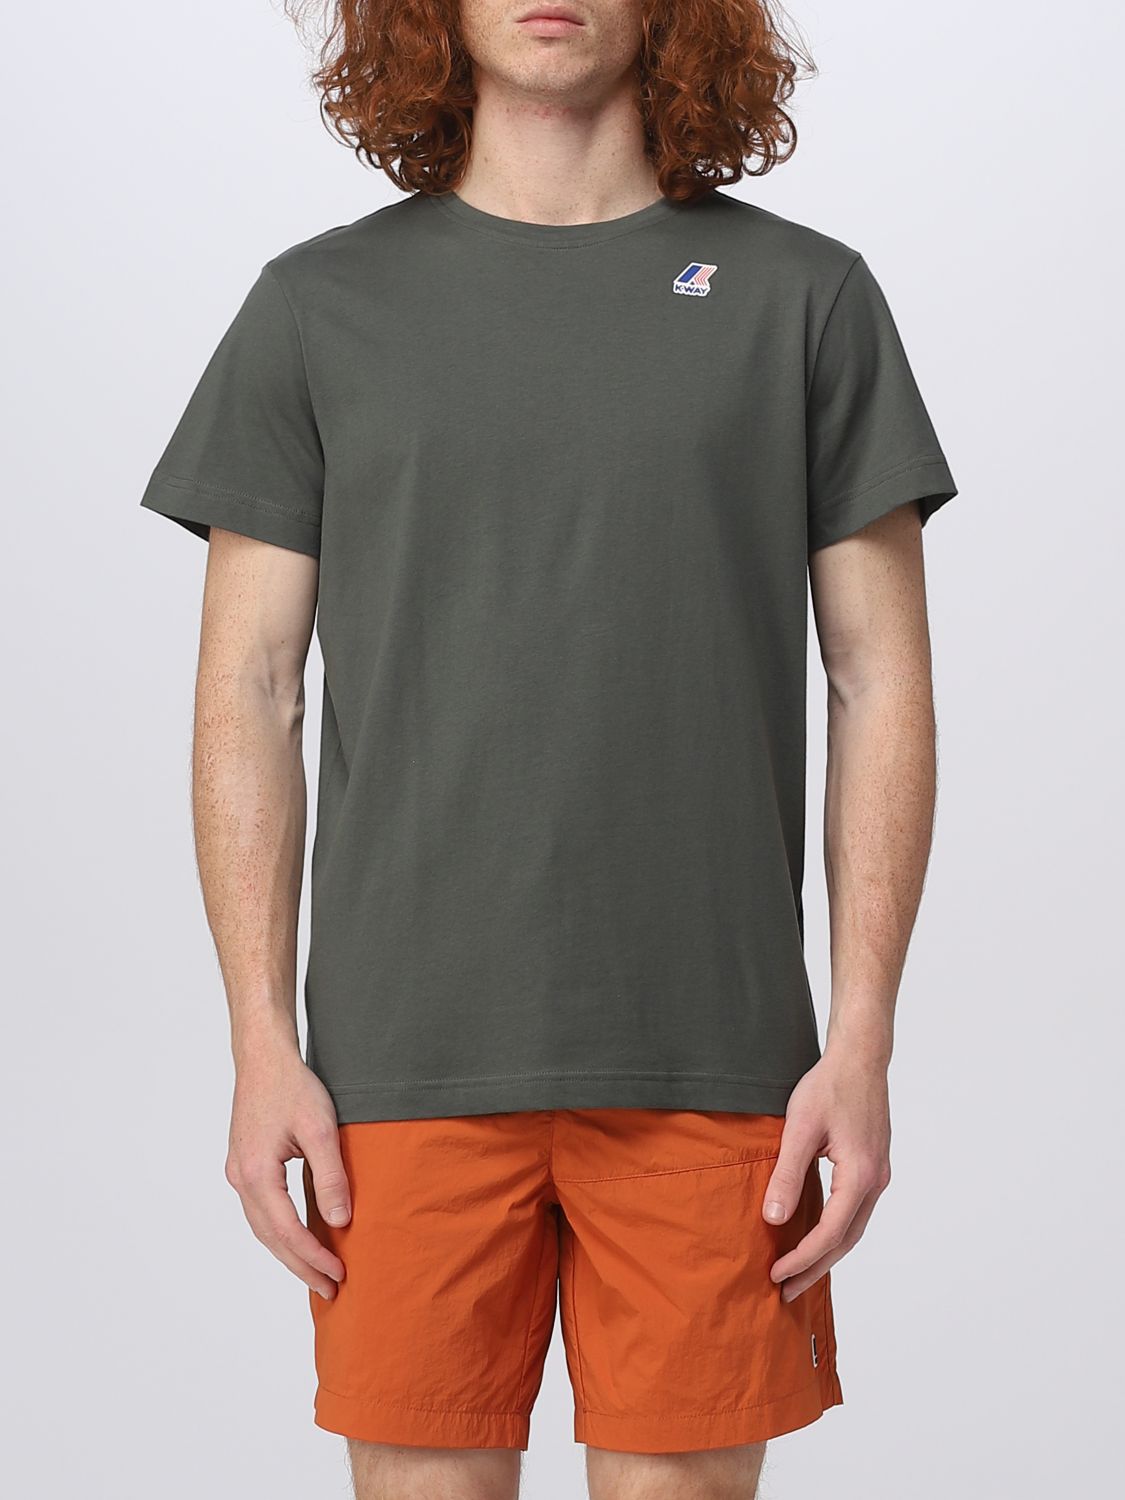 K-way T-shirt  Herren Farbe Military